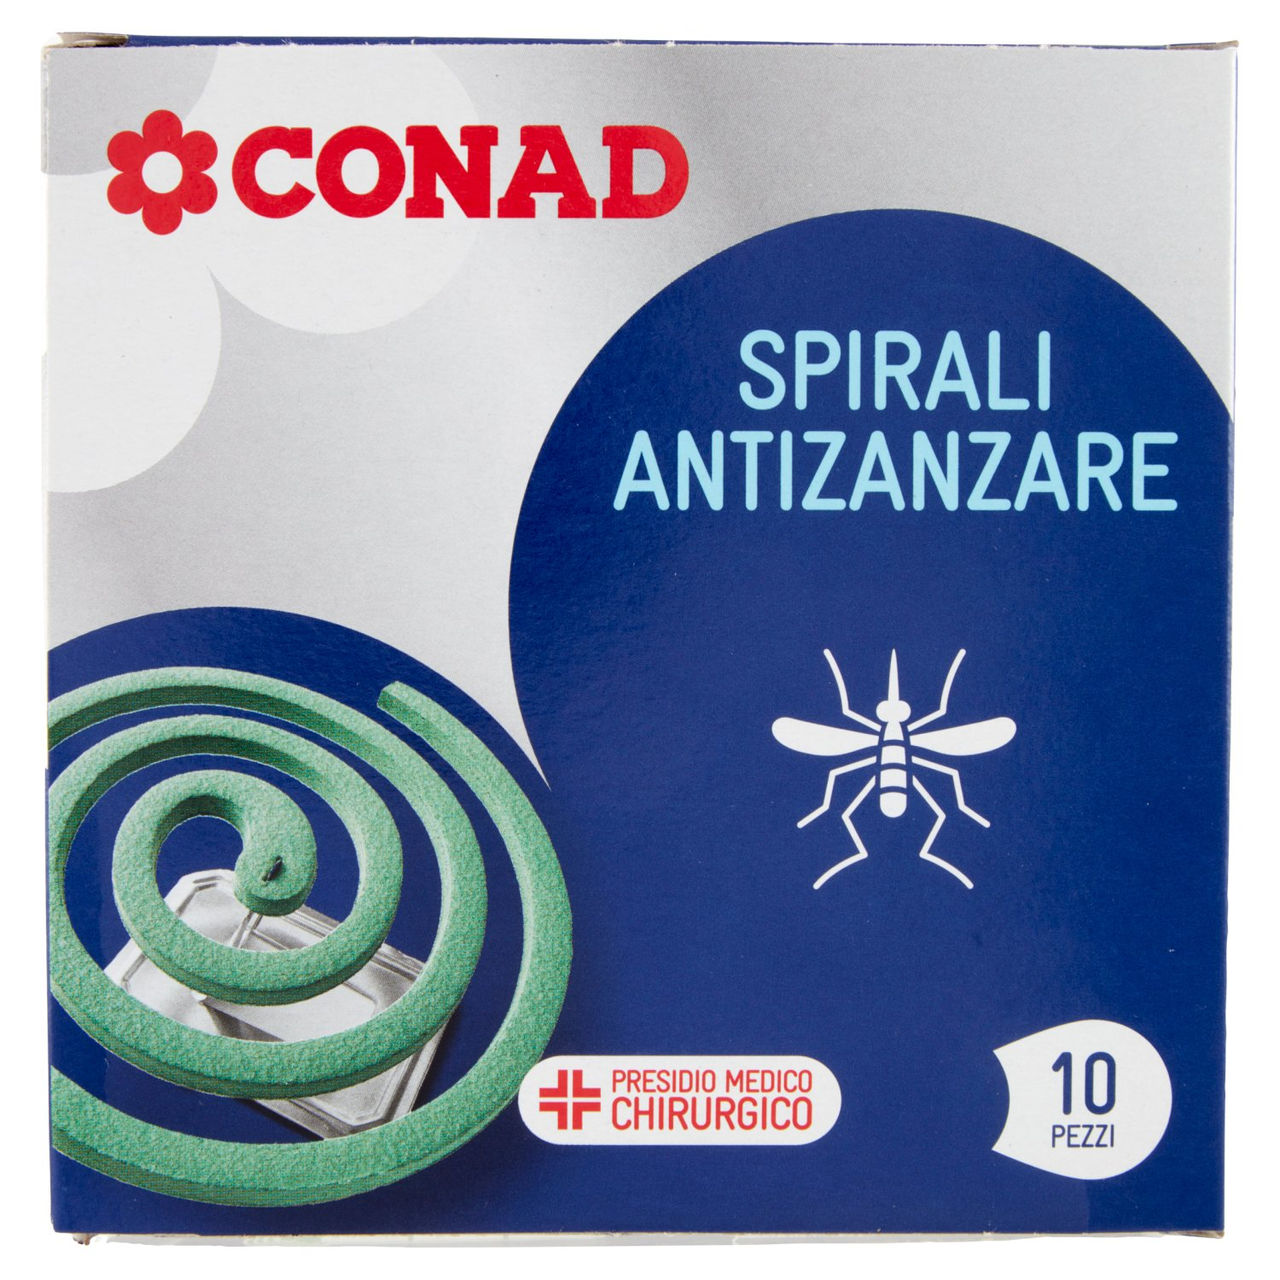 Spirali Antizanzare Conad in vendita online